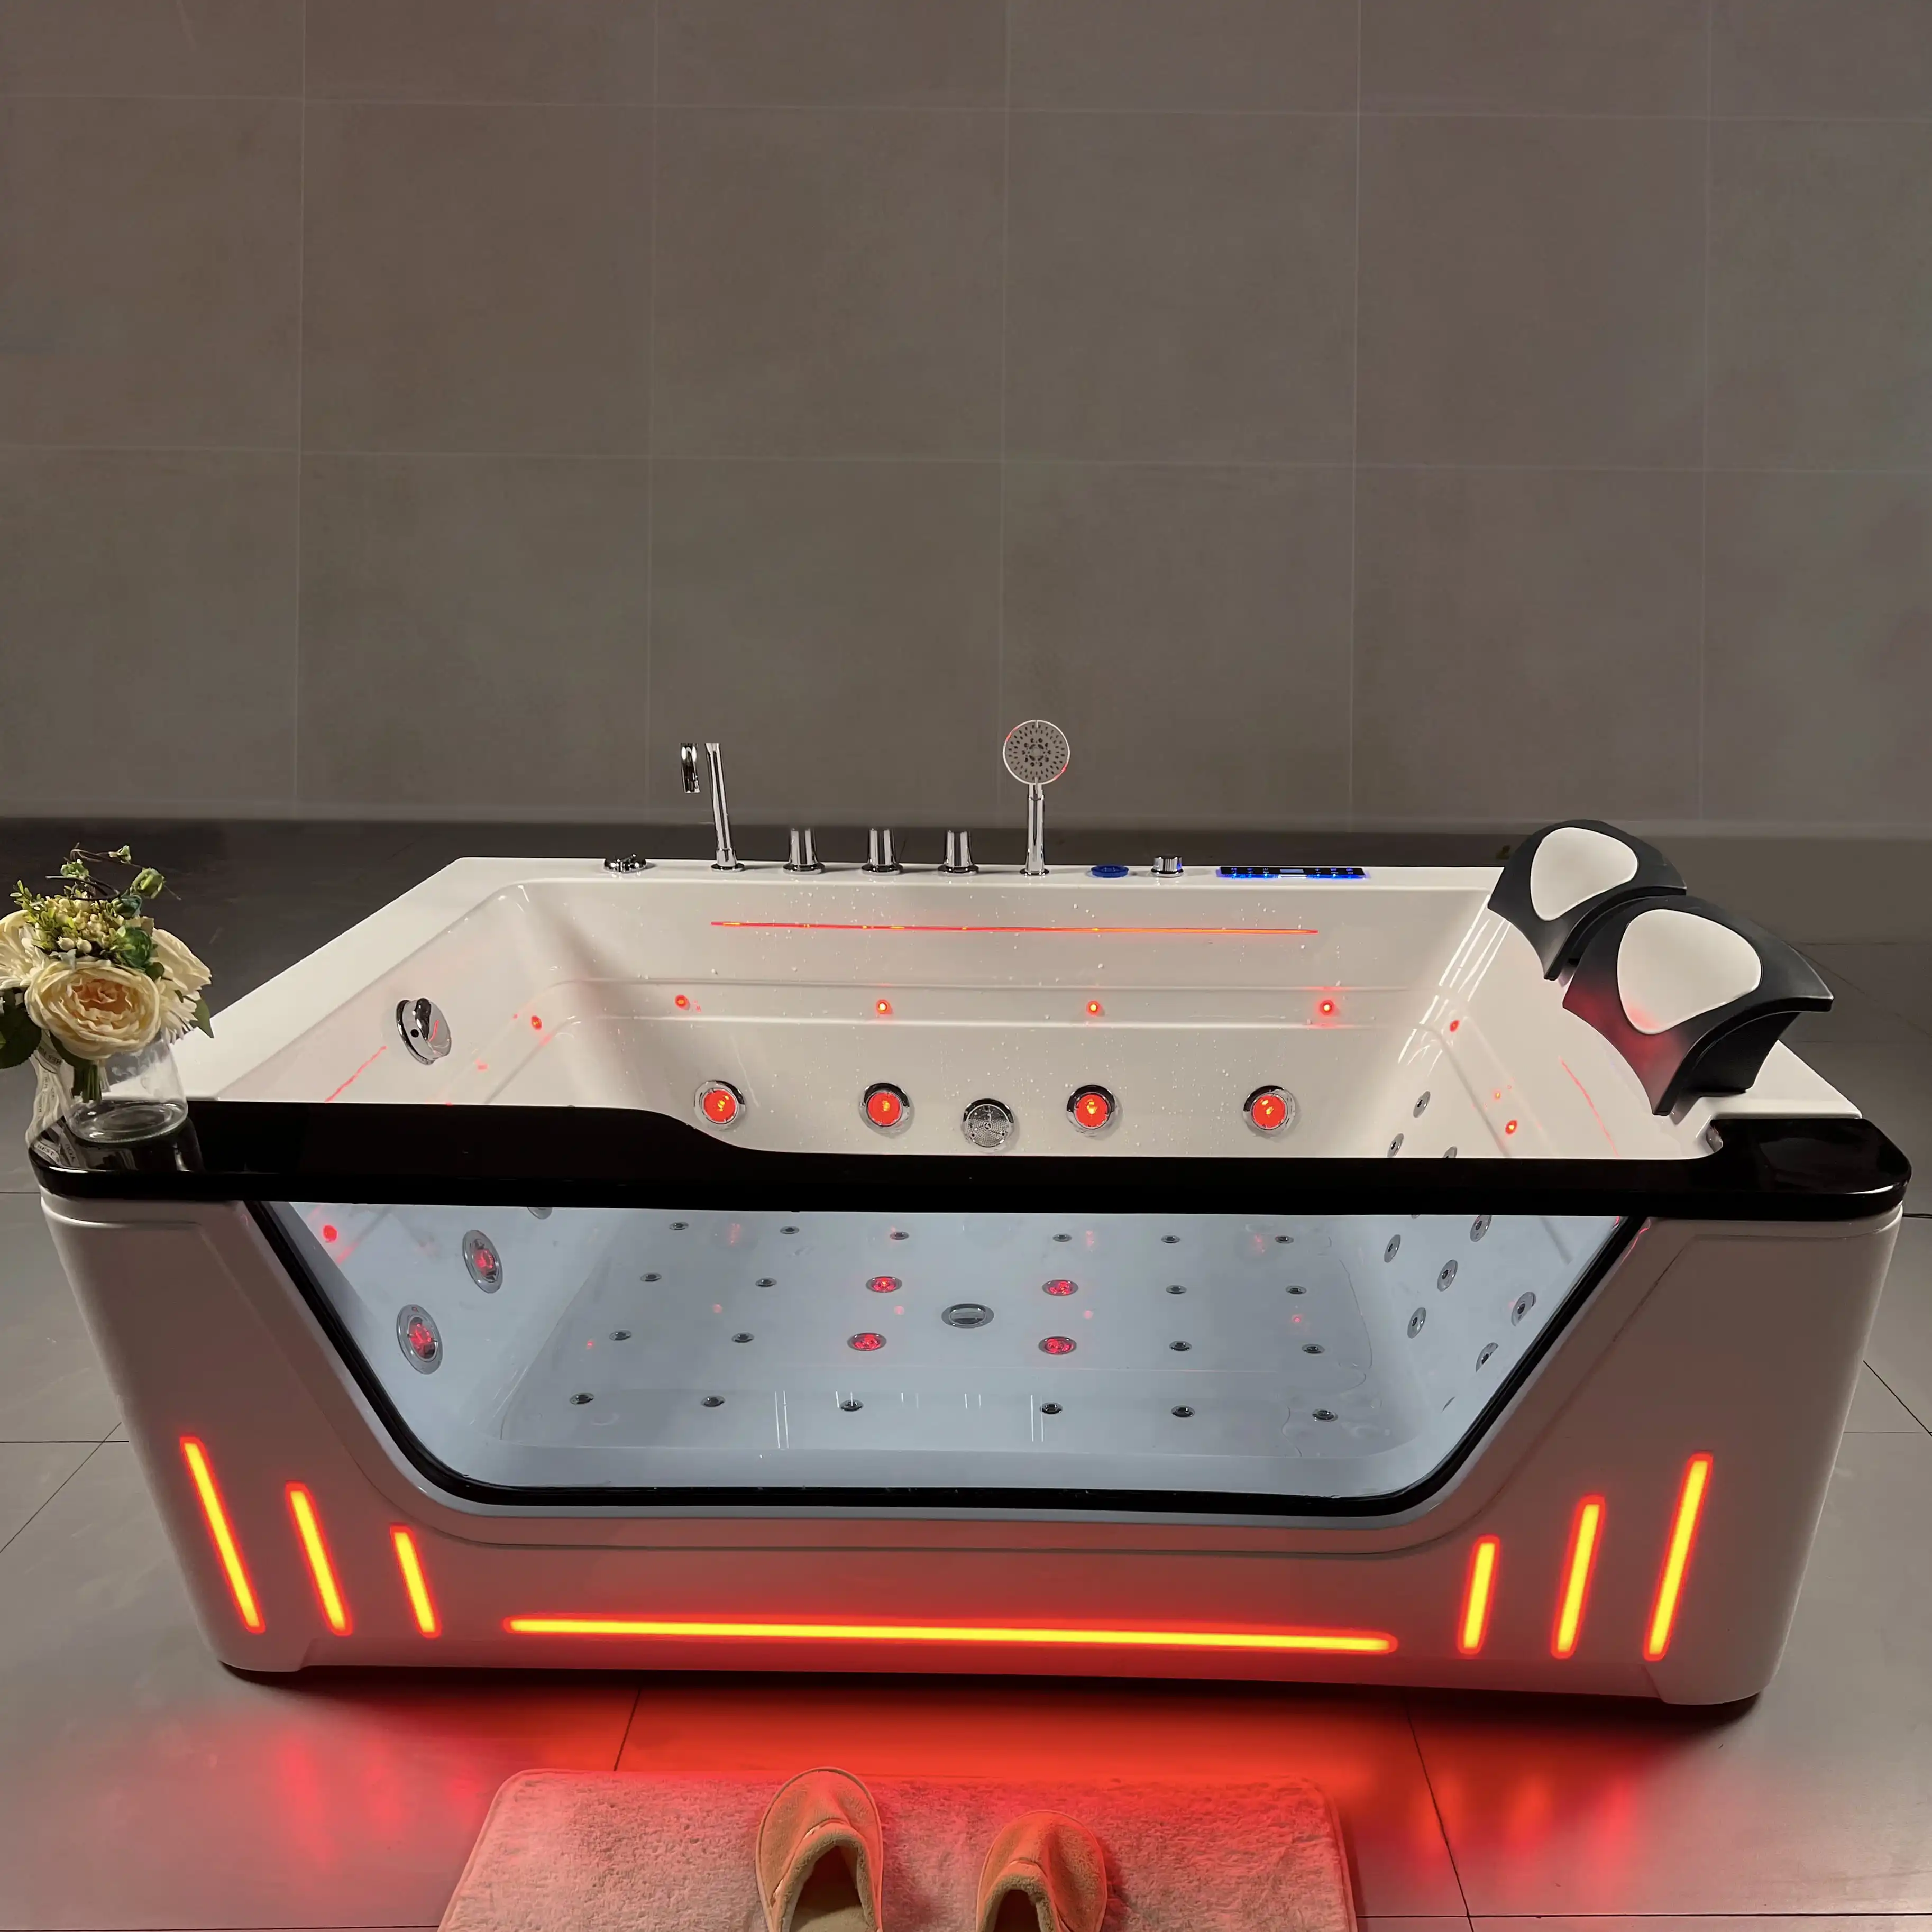 2 people large massage whirlpool bathtub outdoor spa sex massage spa hot soak bathtub